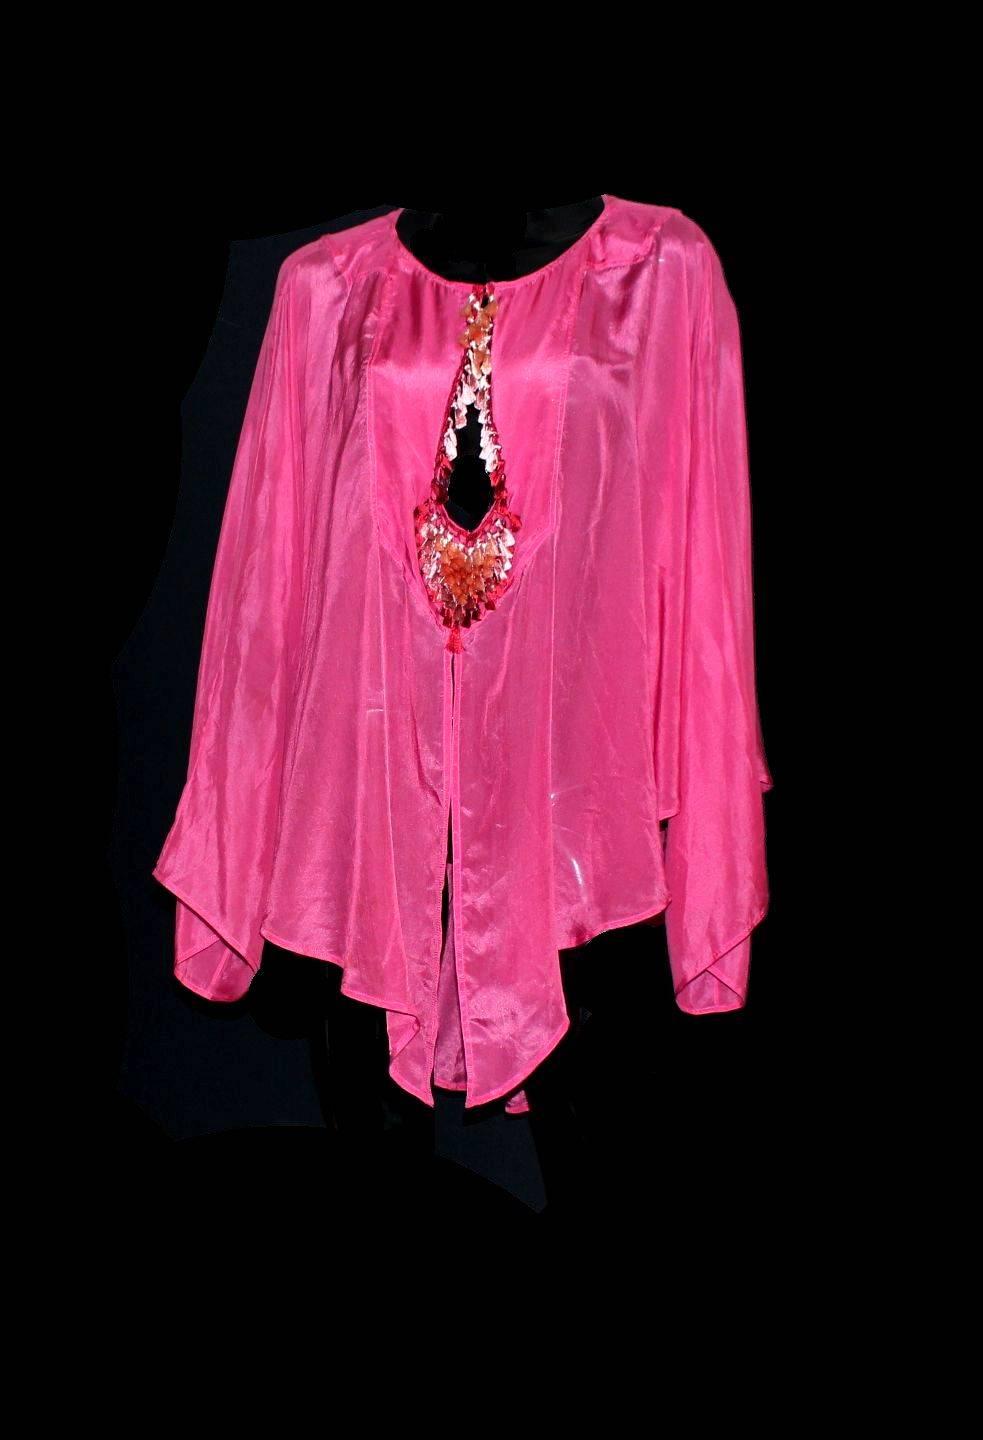 Wunderschönes Stück von Gucci
Aus der Collection'S 2004
Entworfen für Gucci 
Wunderschön schimmernde Seide - die Farben reflektieren im Licht
Rosa Farbe - SO Barbie!
Fledermausärmel
Wunderschöne ombre Quasten mit